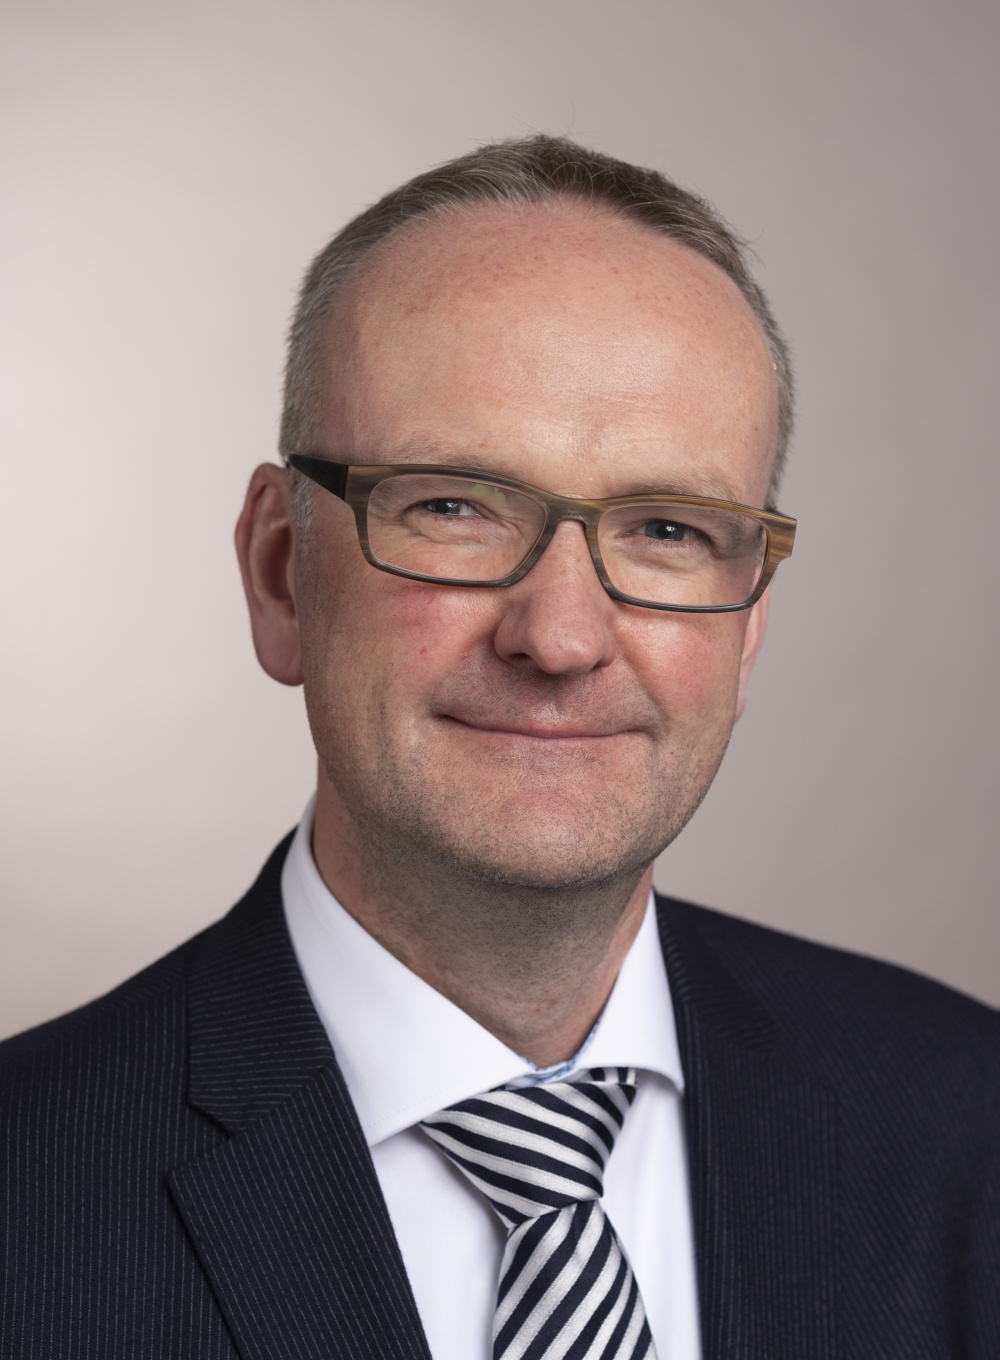 Thomas Steigleder, direttore generale di Innovazione e Ambiente di IHK Frankfurt am Main